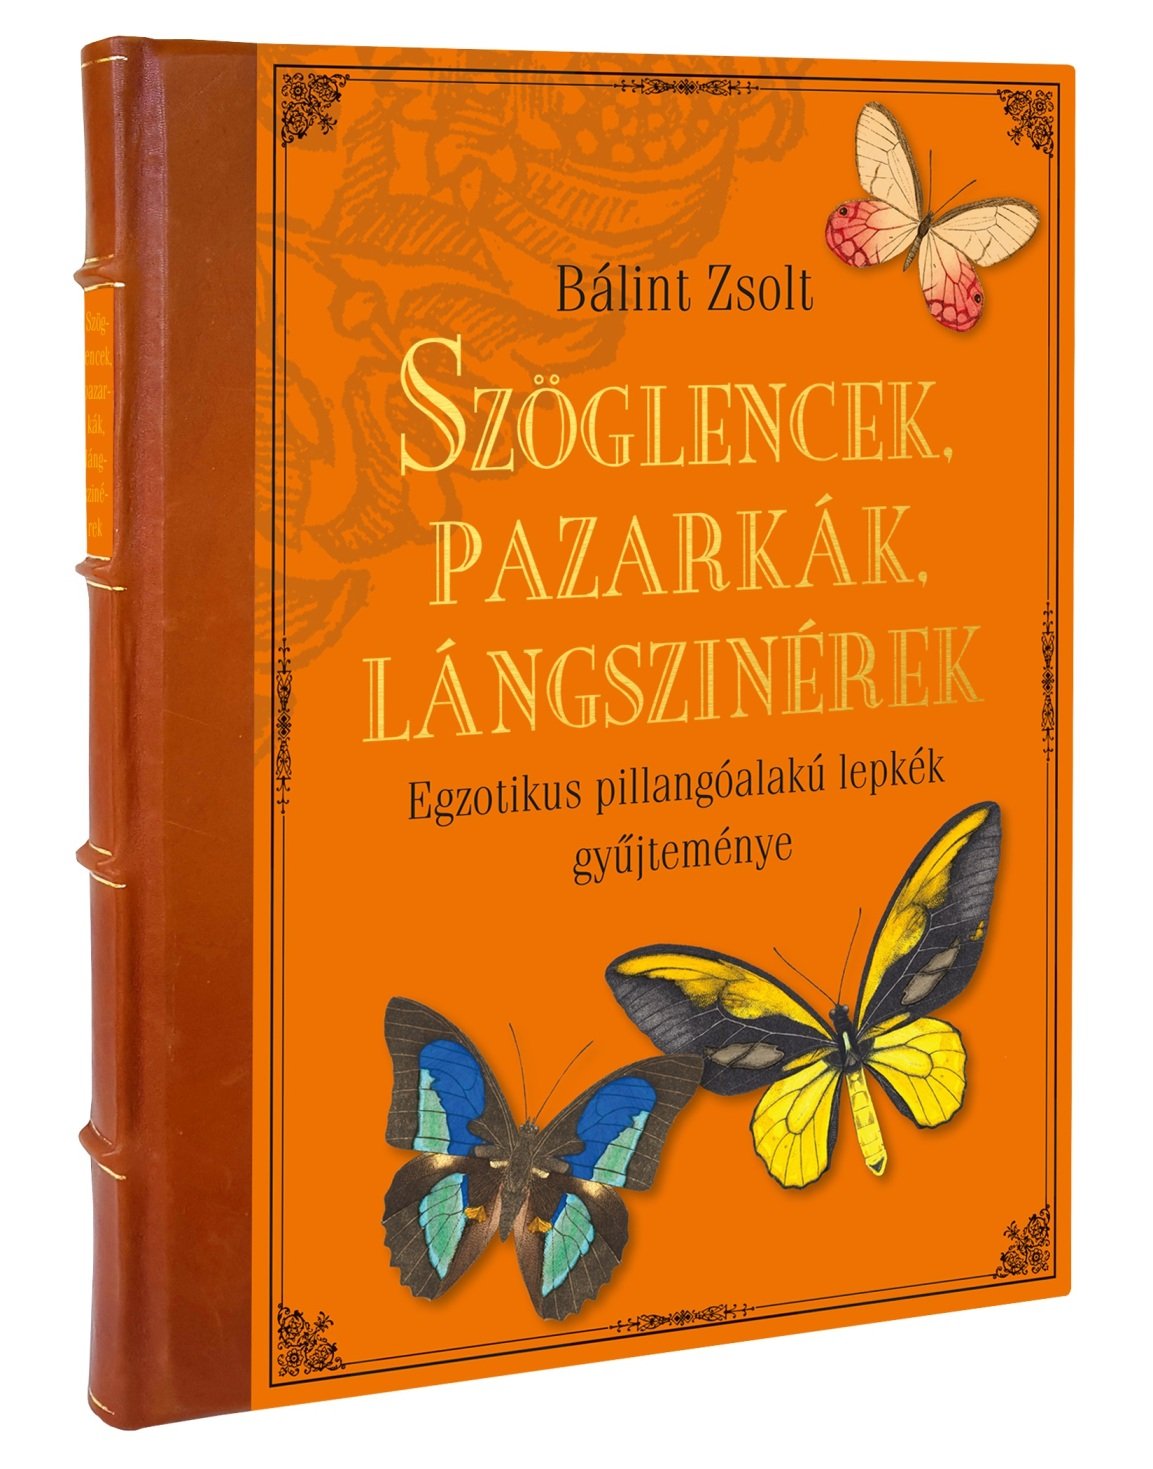 Bálint Zsolt: Szöglencek, pazarkák, lángszinérek. Egzotikus pillangóalakú lepkék gyűjteménye (Rippl-Rónai Múzeum CC BY-NC-ND)